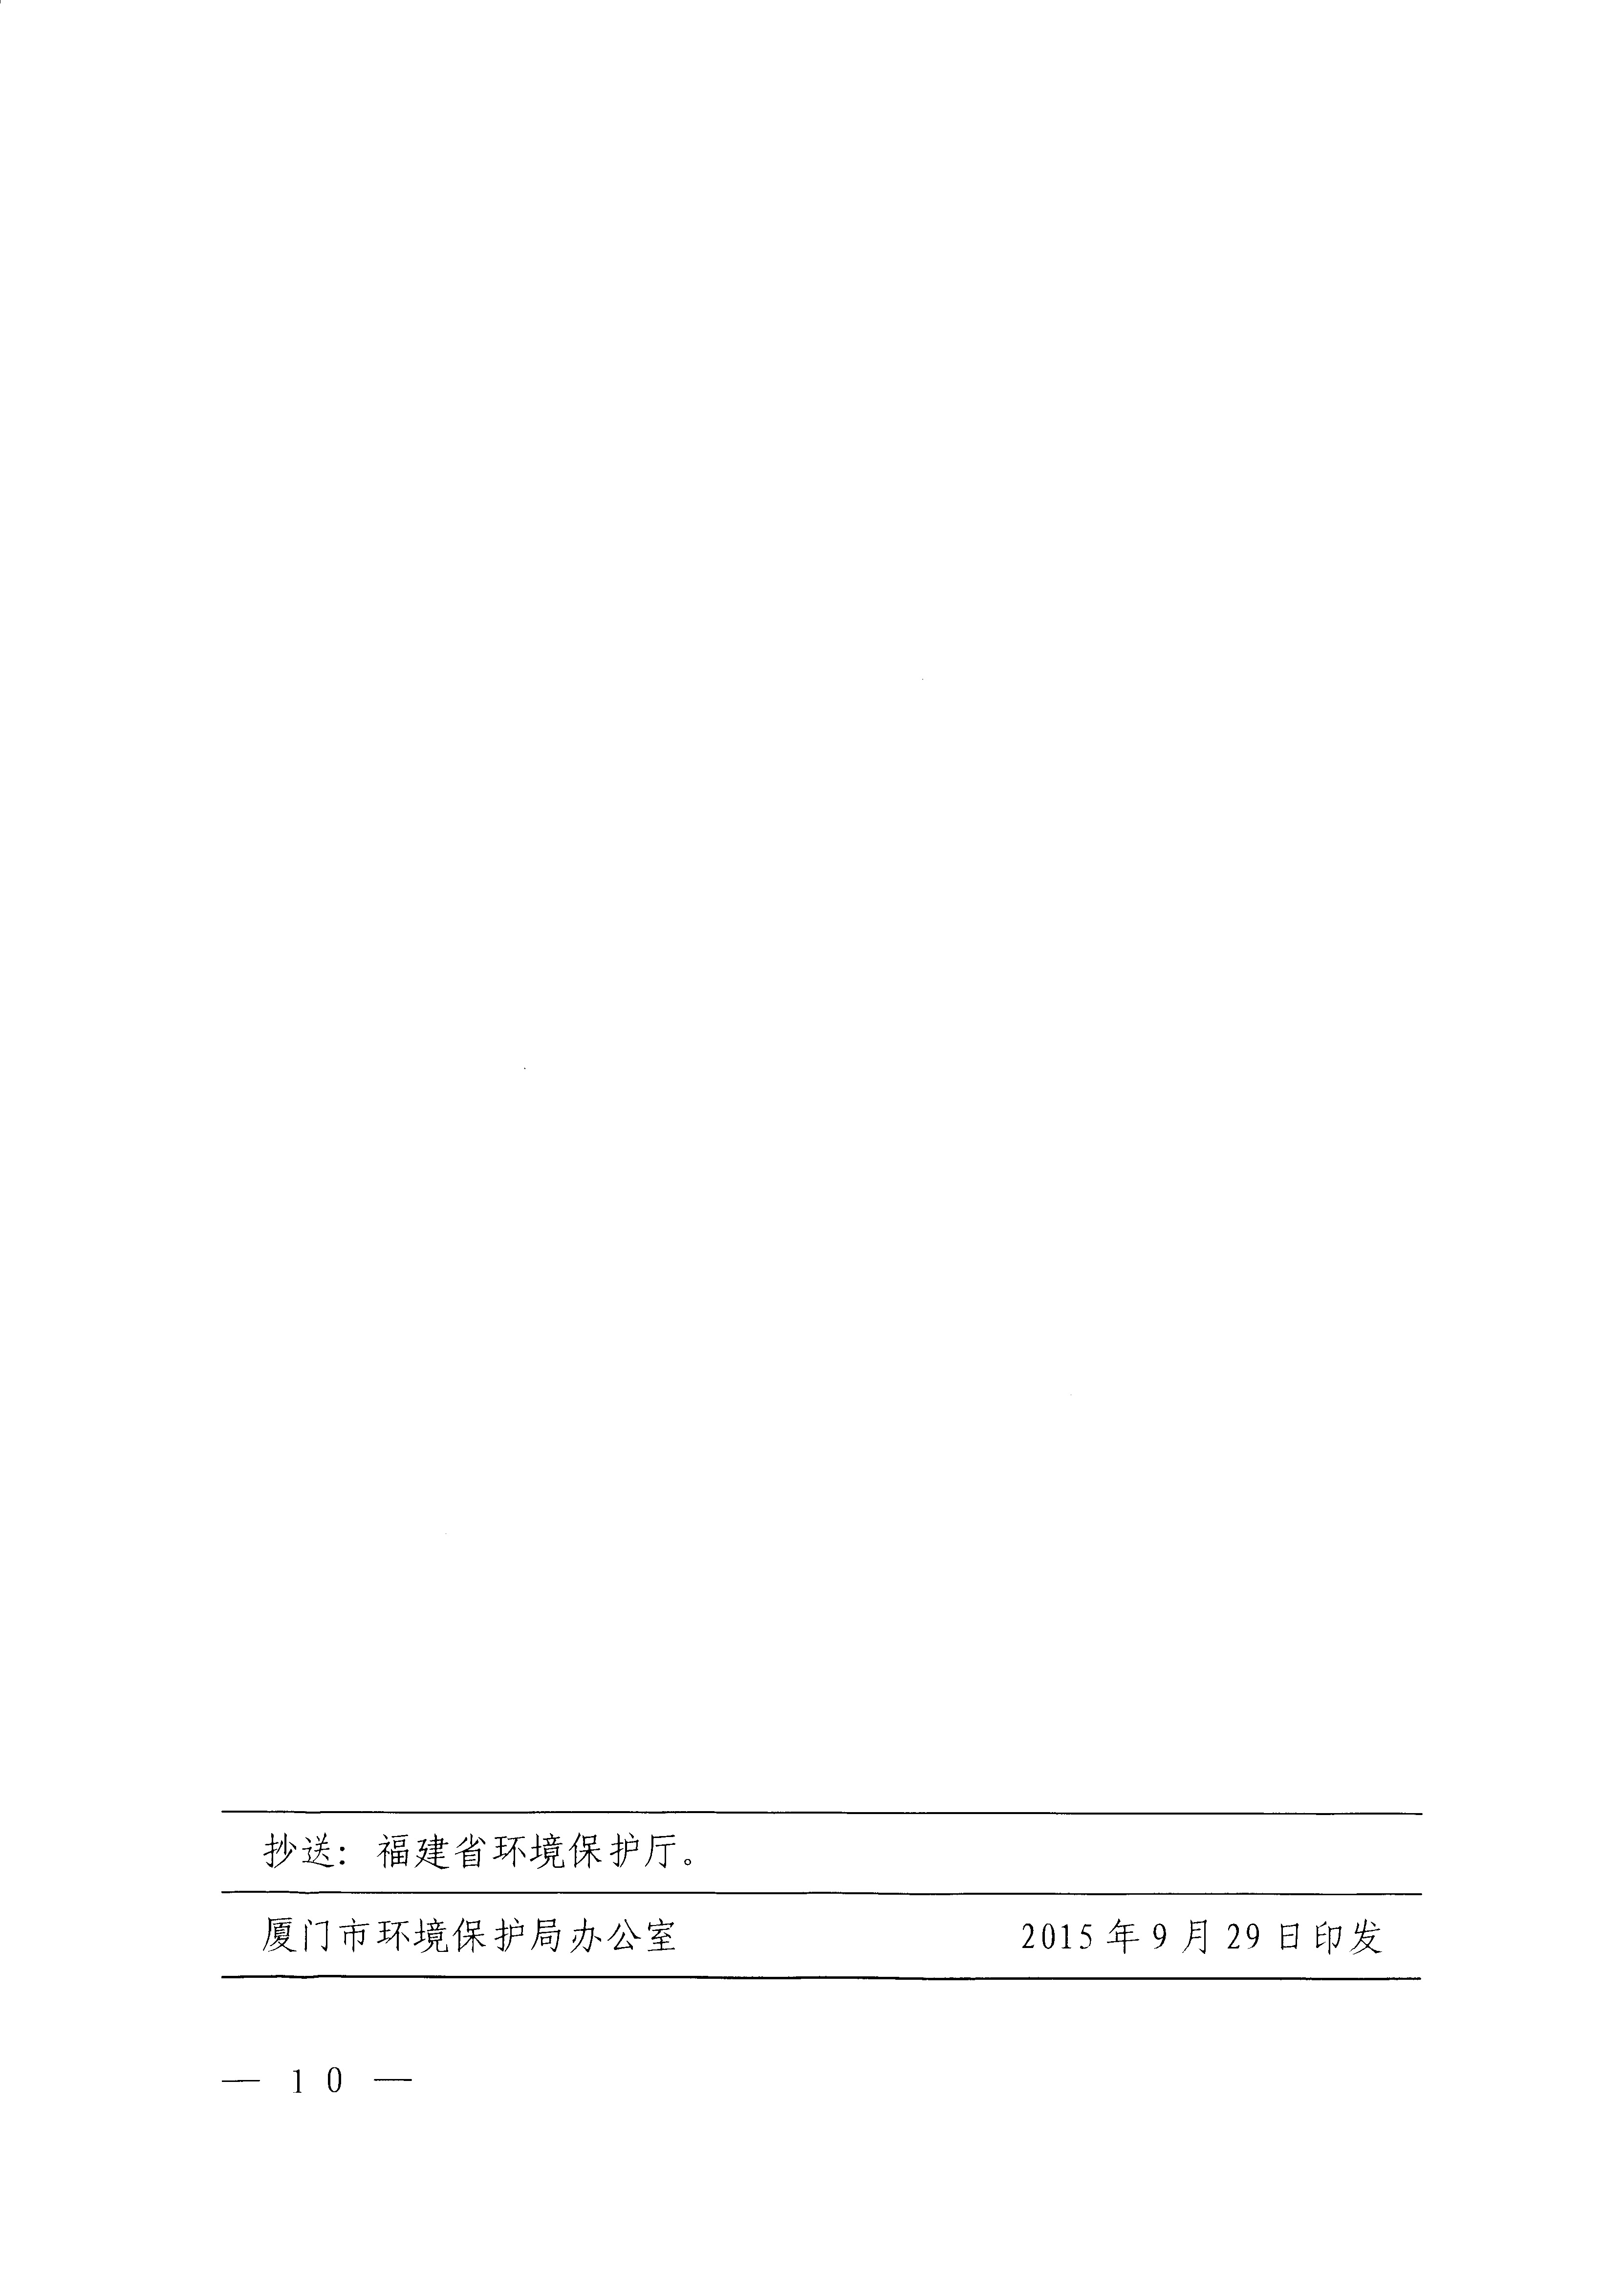 福建省地方标准《厦门市大气污染物排放标准》（DB35-2011）_页面_10.jpg